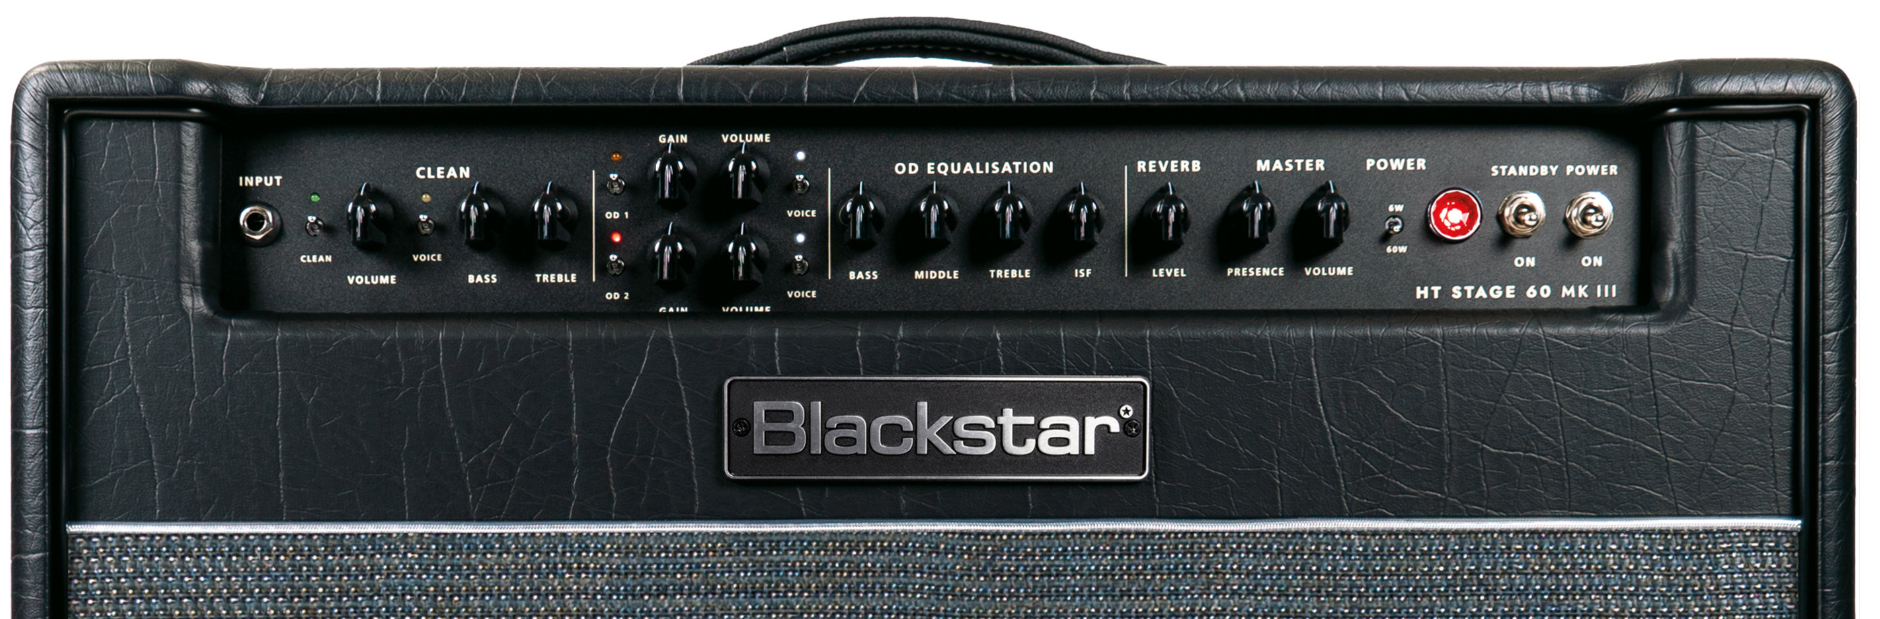 Blackstar Ht Venue Stage 60 112 Mkiii 60w 1x12 El34 - Combo amplificador para guitarra eléctrica - Variation 3